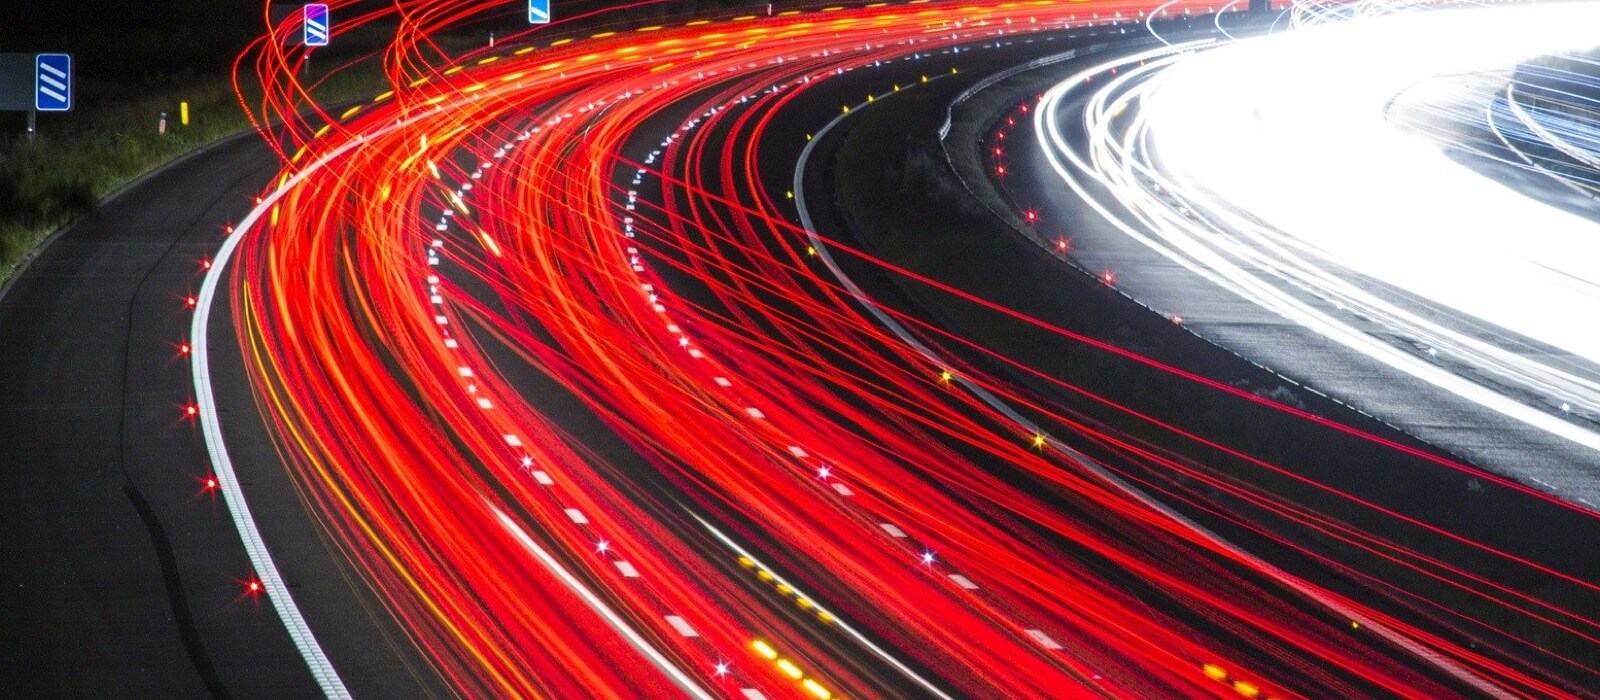 Babel Big Data Compañía Logística Global. Panorámica de la curva de una autopista con coches a toda velocidad